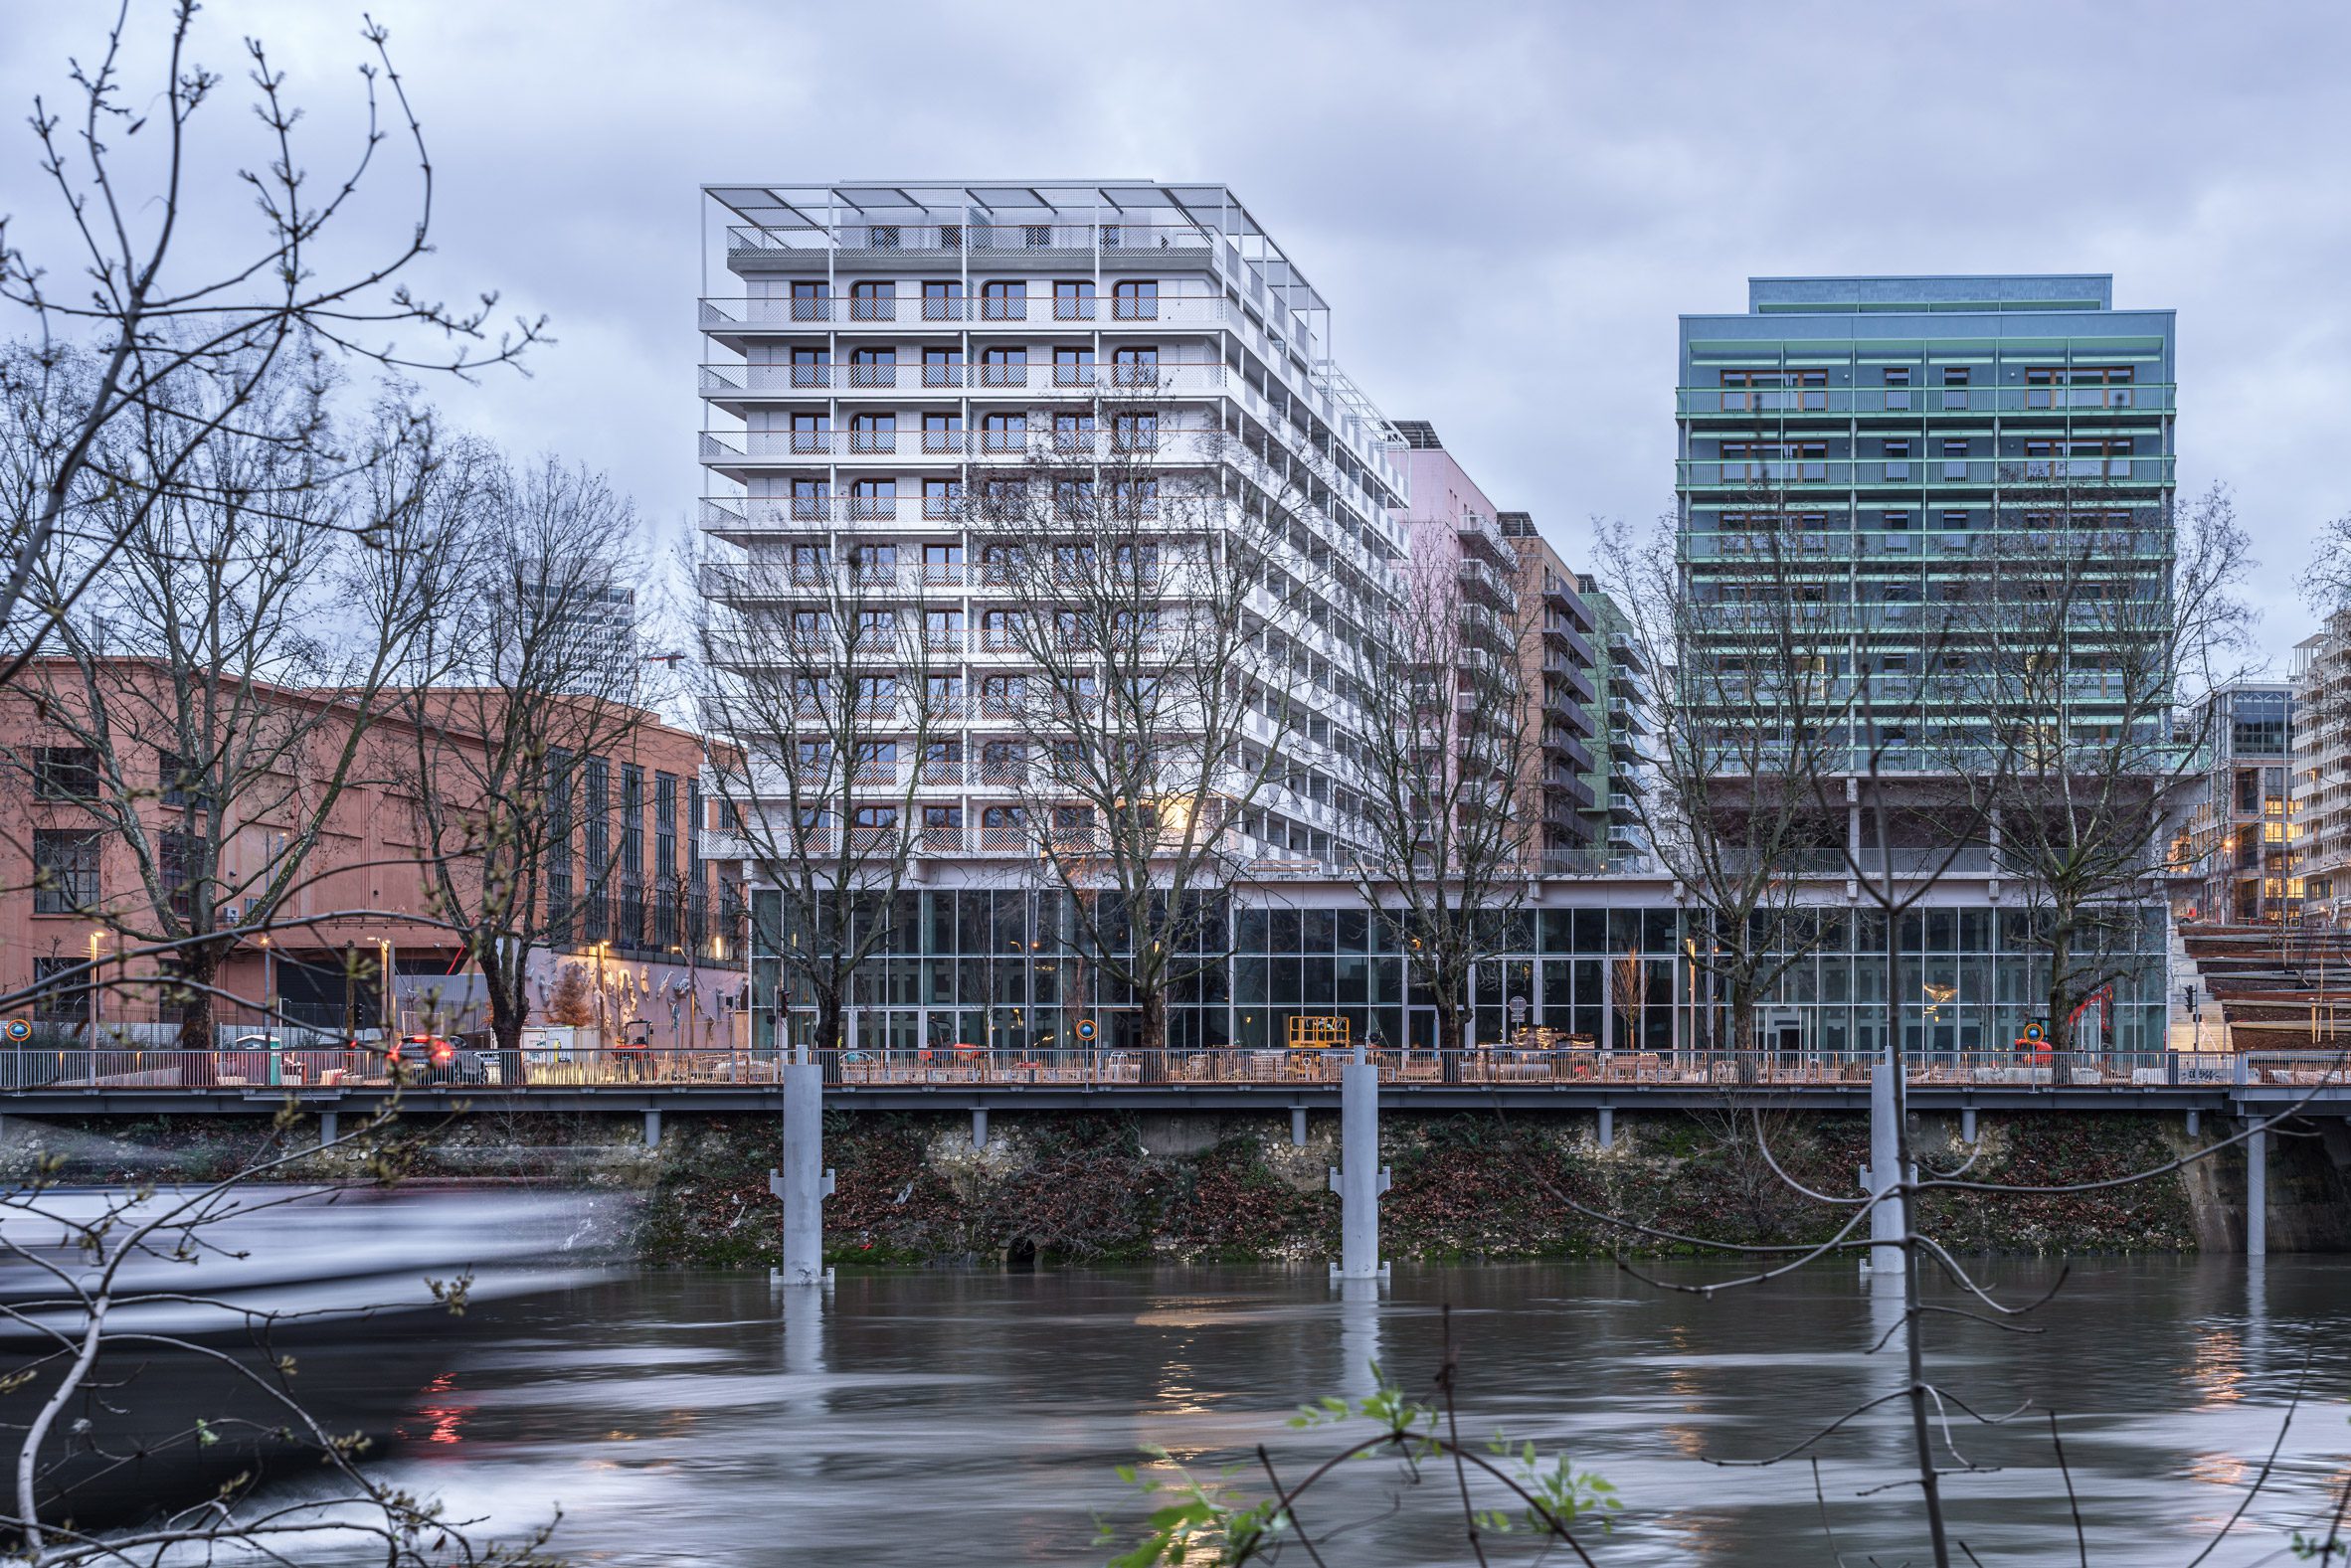 View of Plot 1 apartment block by Brenac & Gonzalez & Associés